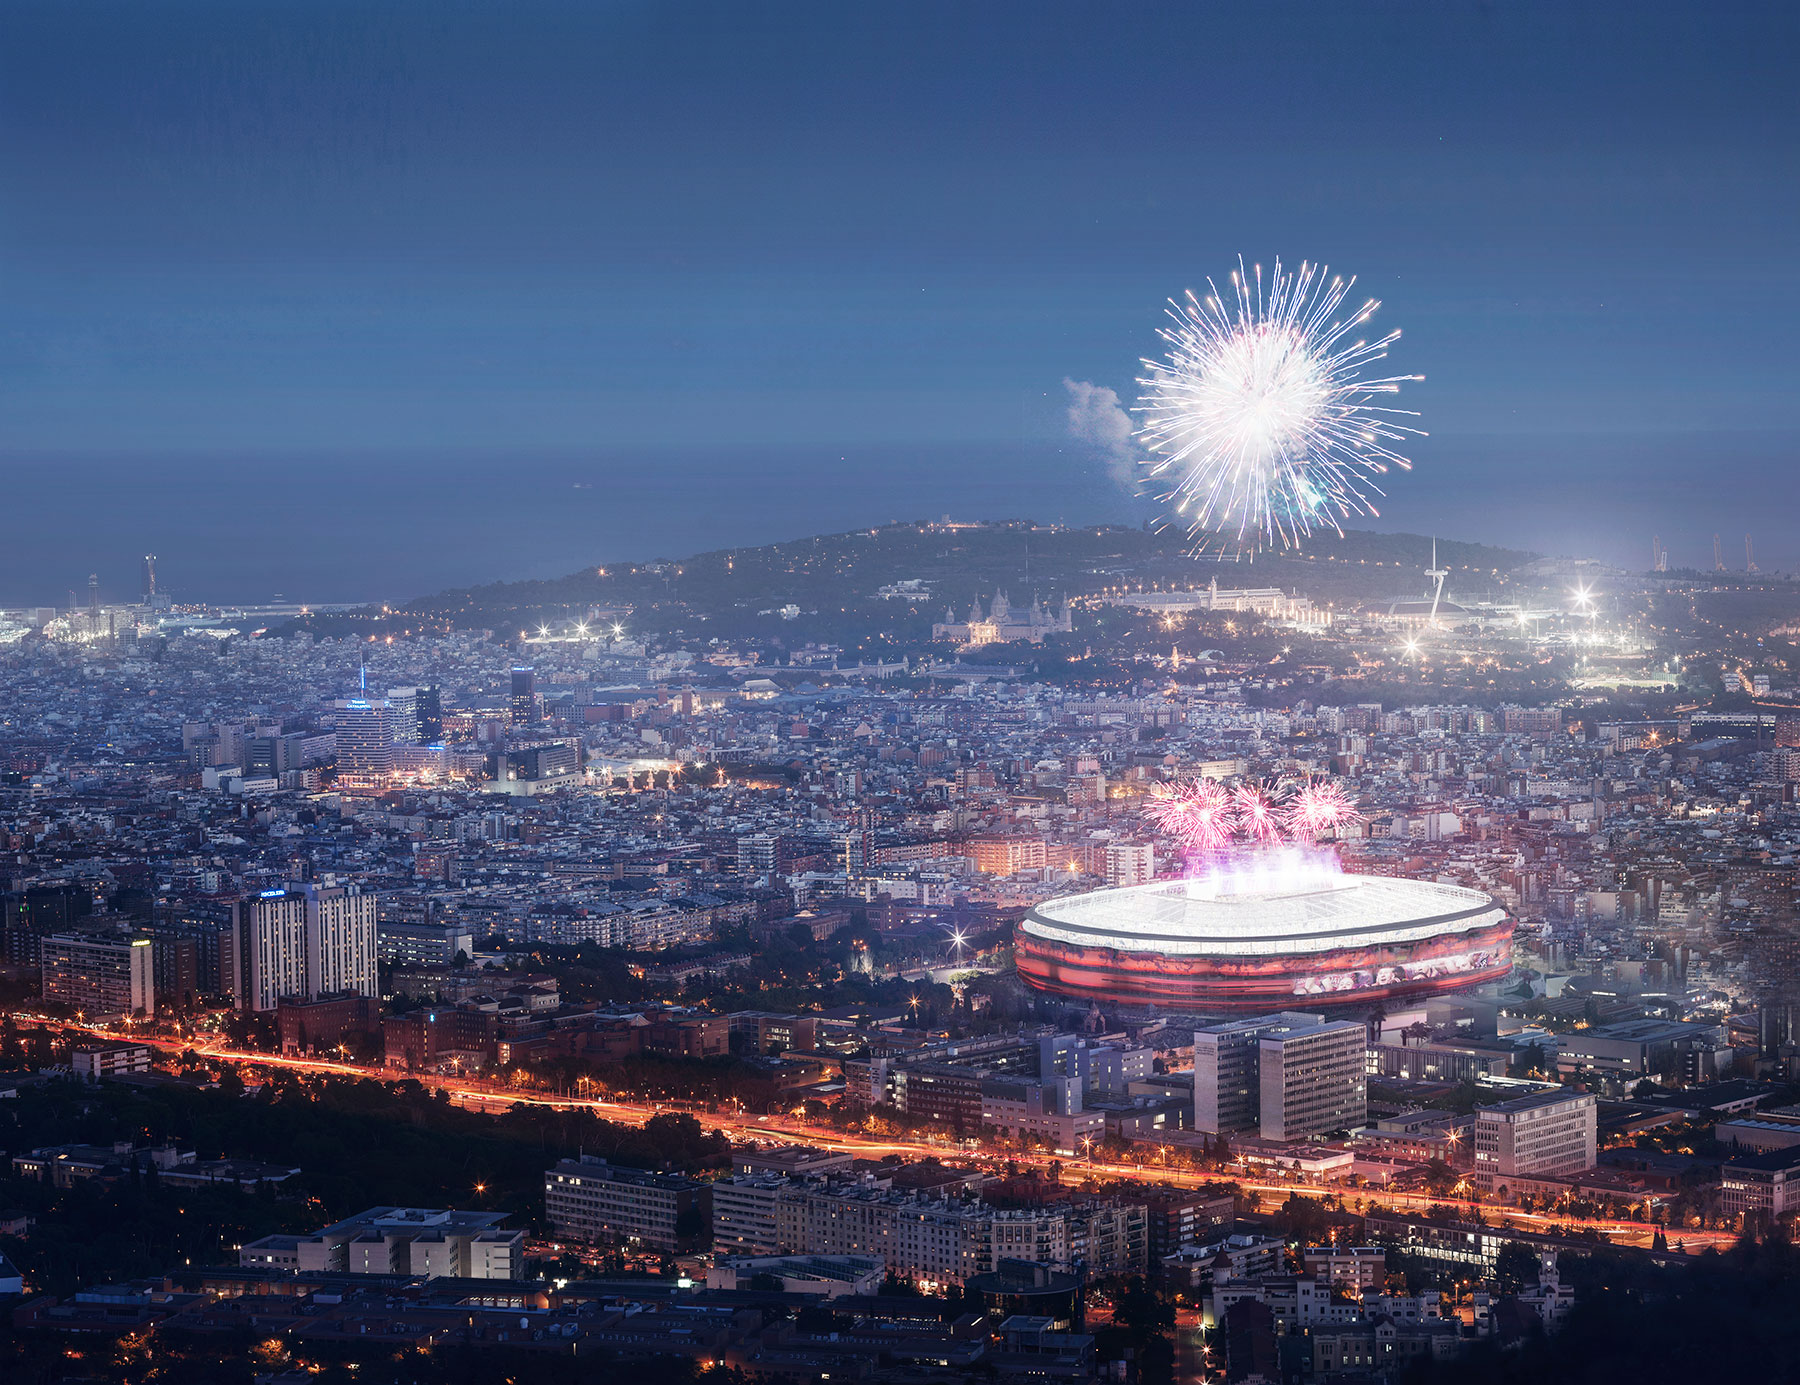 FCBarcelona aerial fireworks render 3D